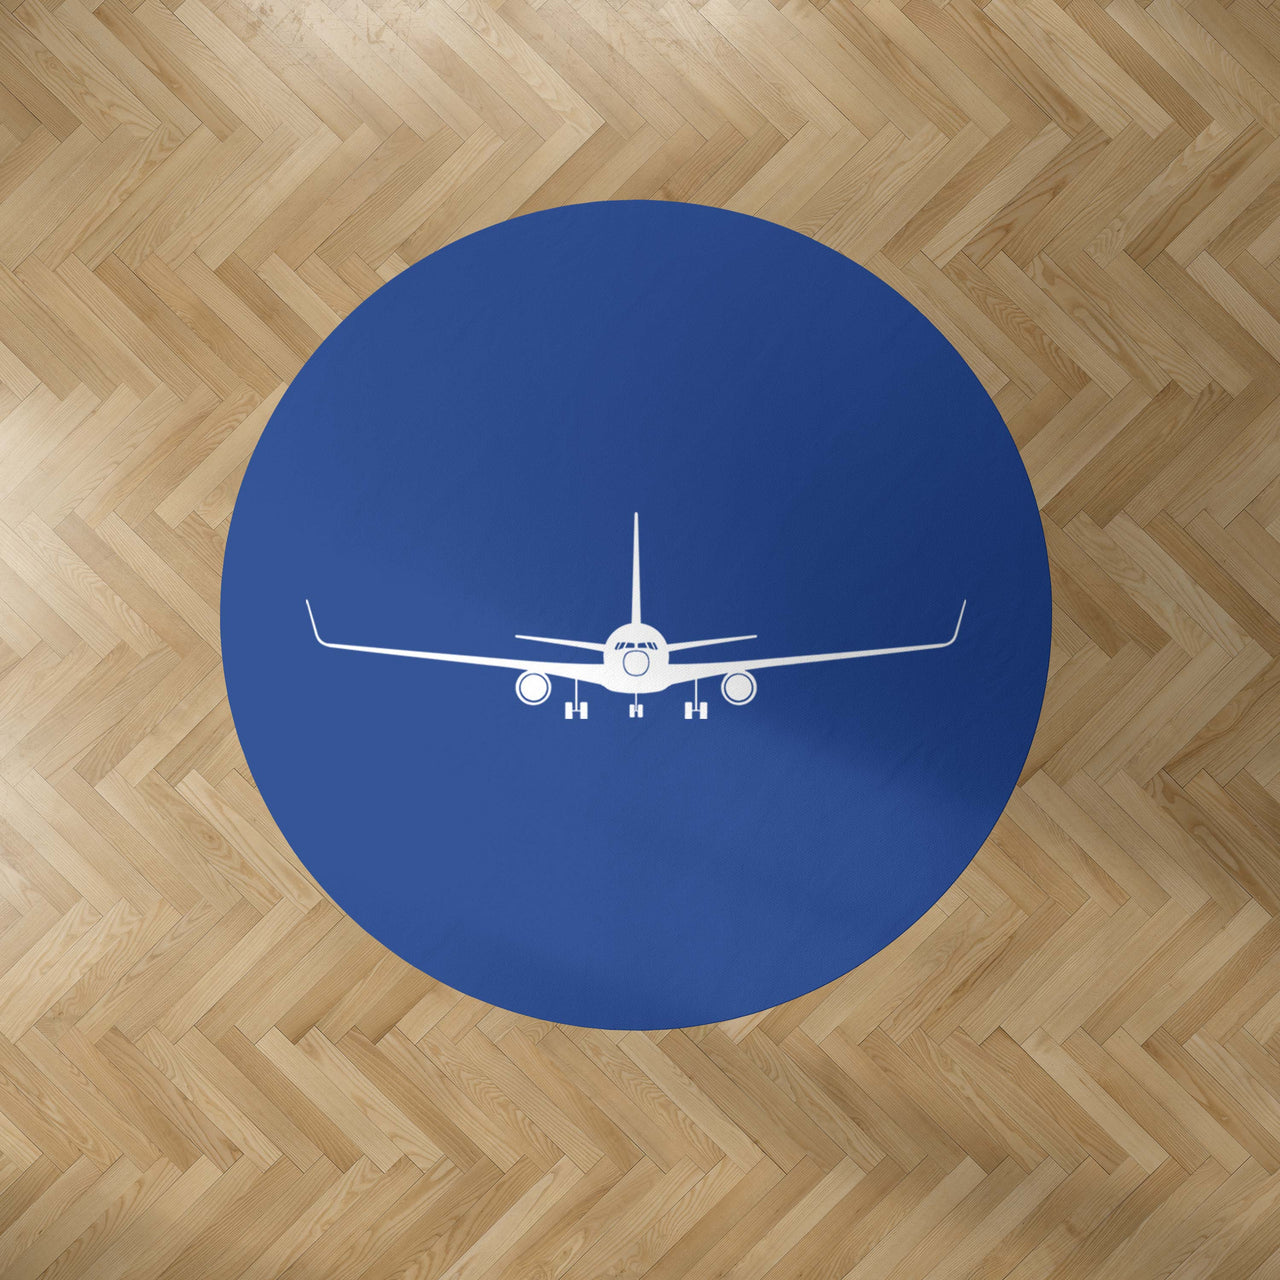 Boeing 767 Silhouette Designed Carpet & Floor Mats (Round)